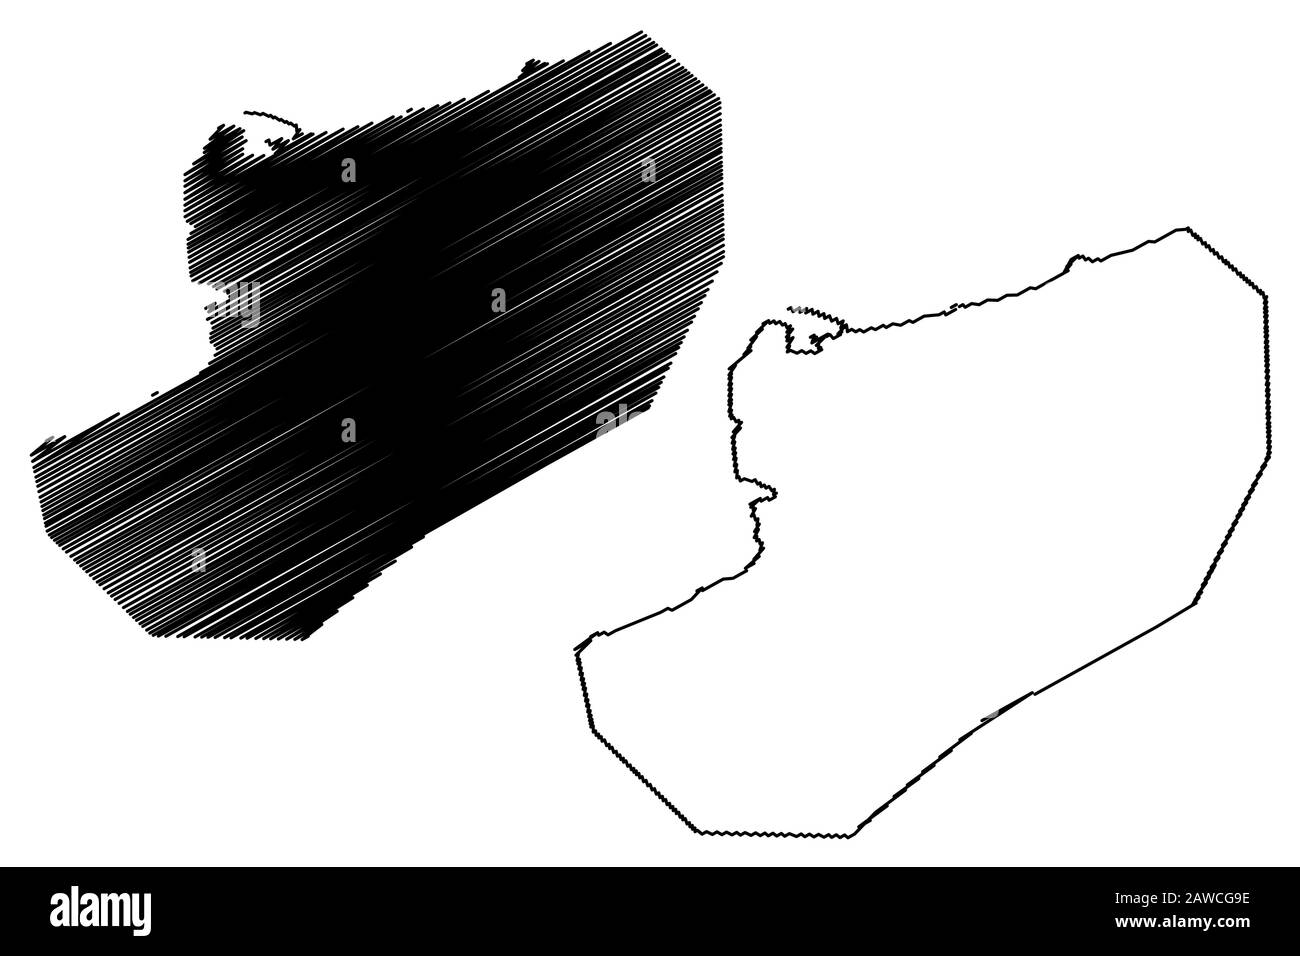 République Borough de point Fortin (sociétés régionales et municipalités, République de Trinité-et-Tobago) illustration vectorielle cartographique, esquisse de griffonnage Illustration de Vecteur